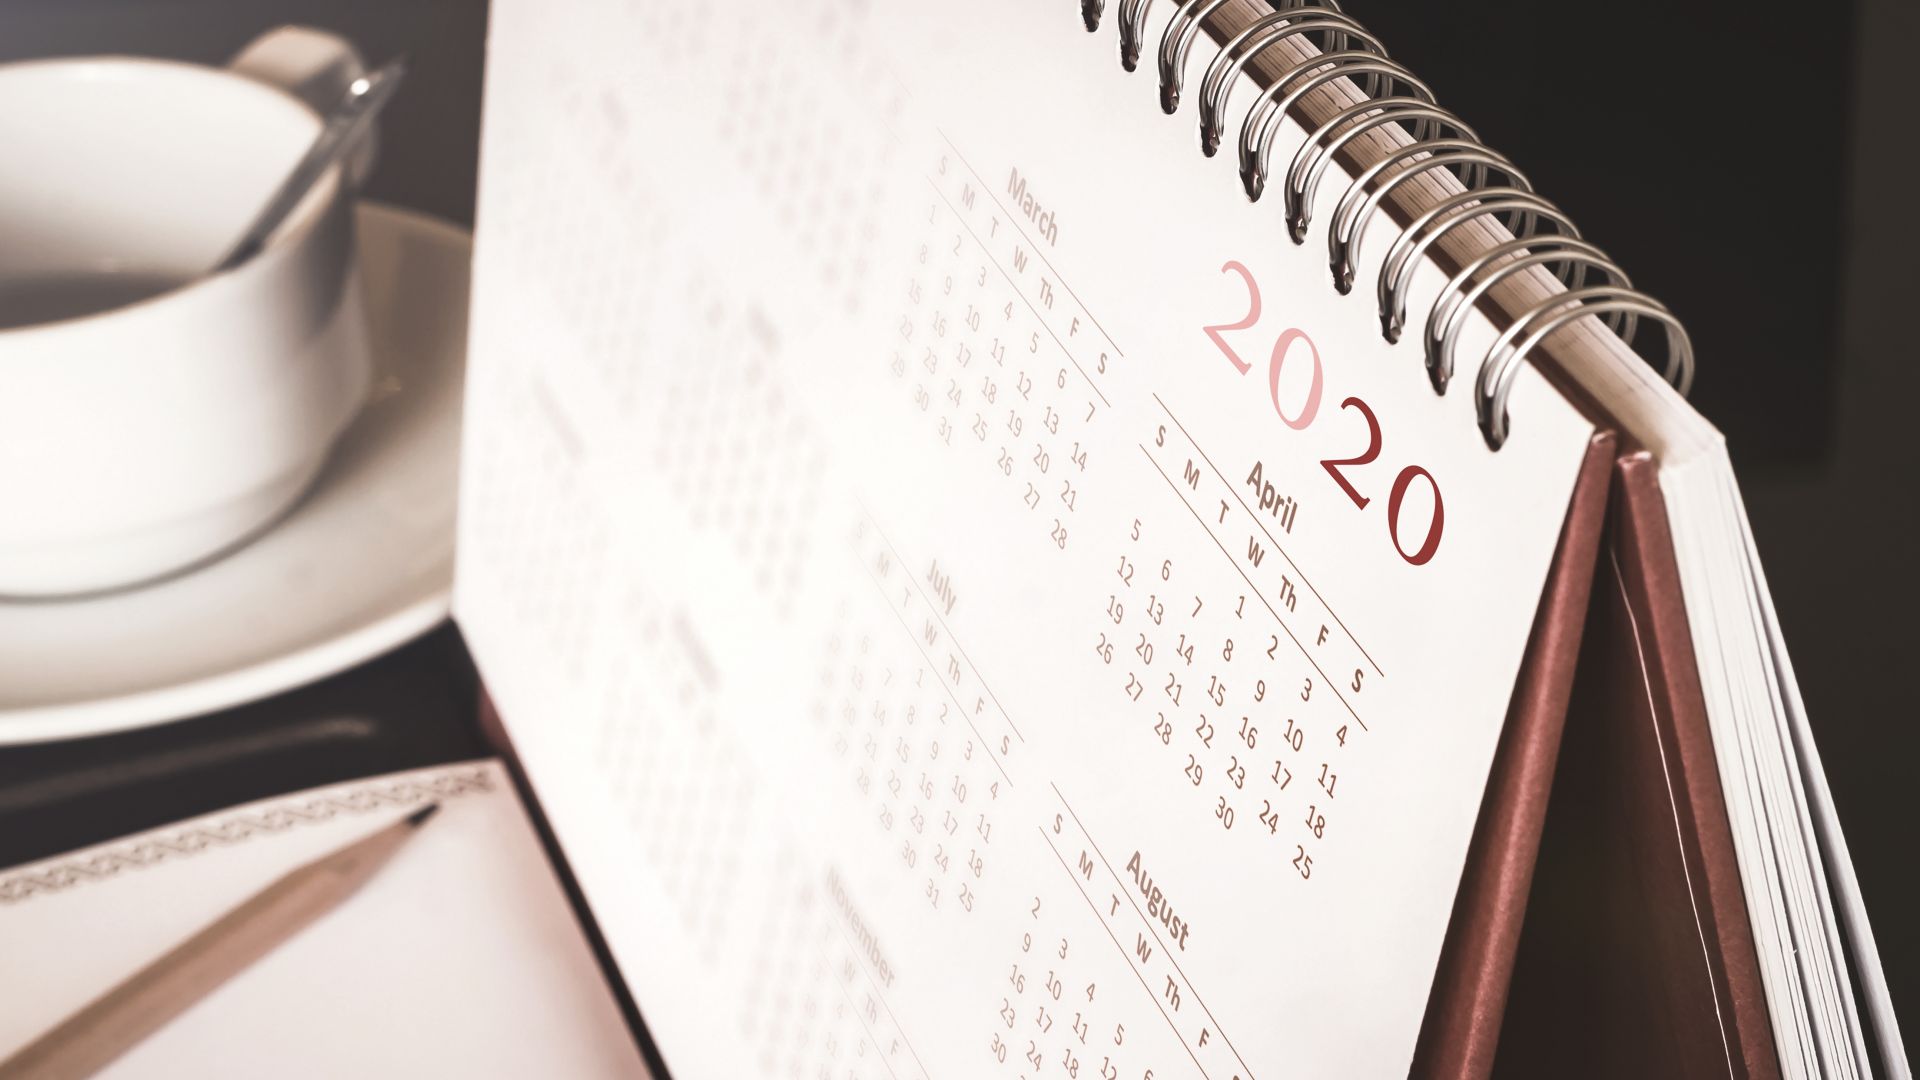 Юли 2020 ще бъде най натовареният месец с 23 работни дни